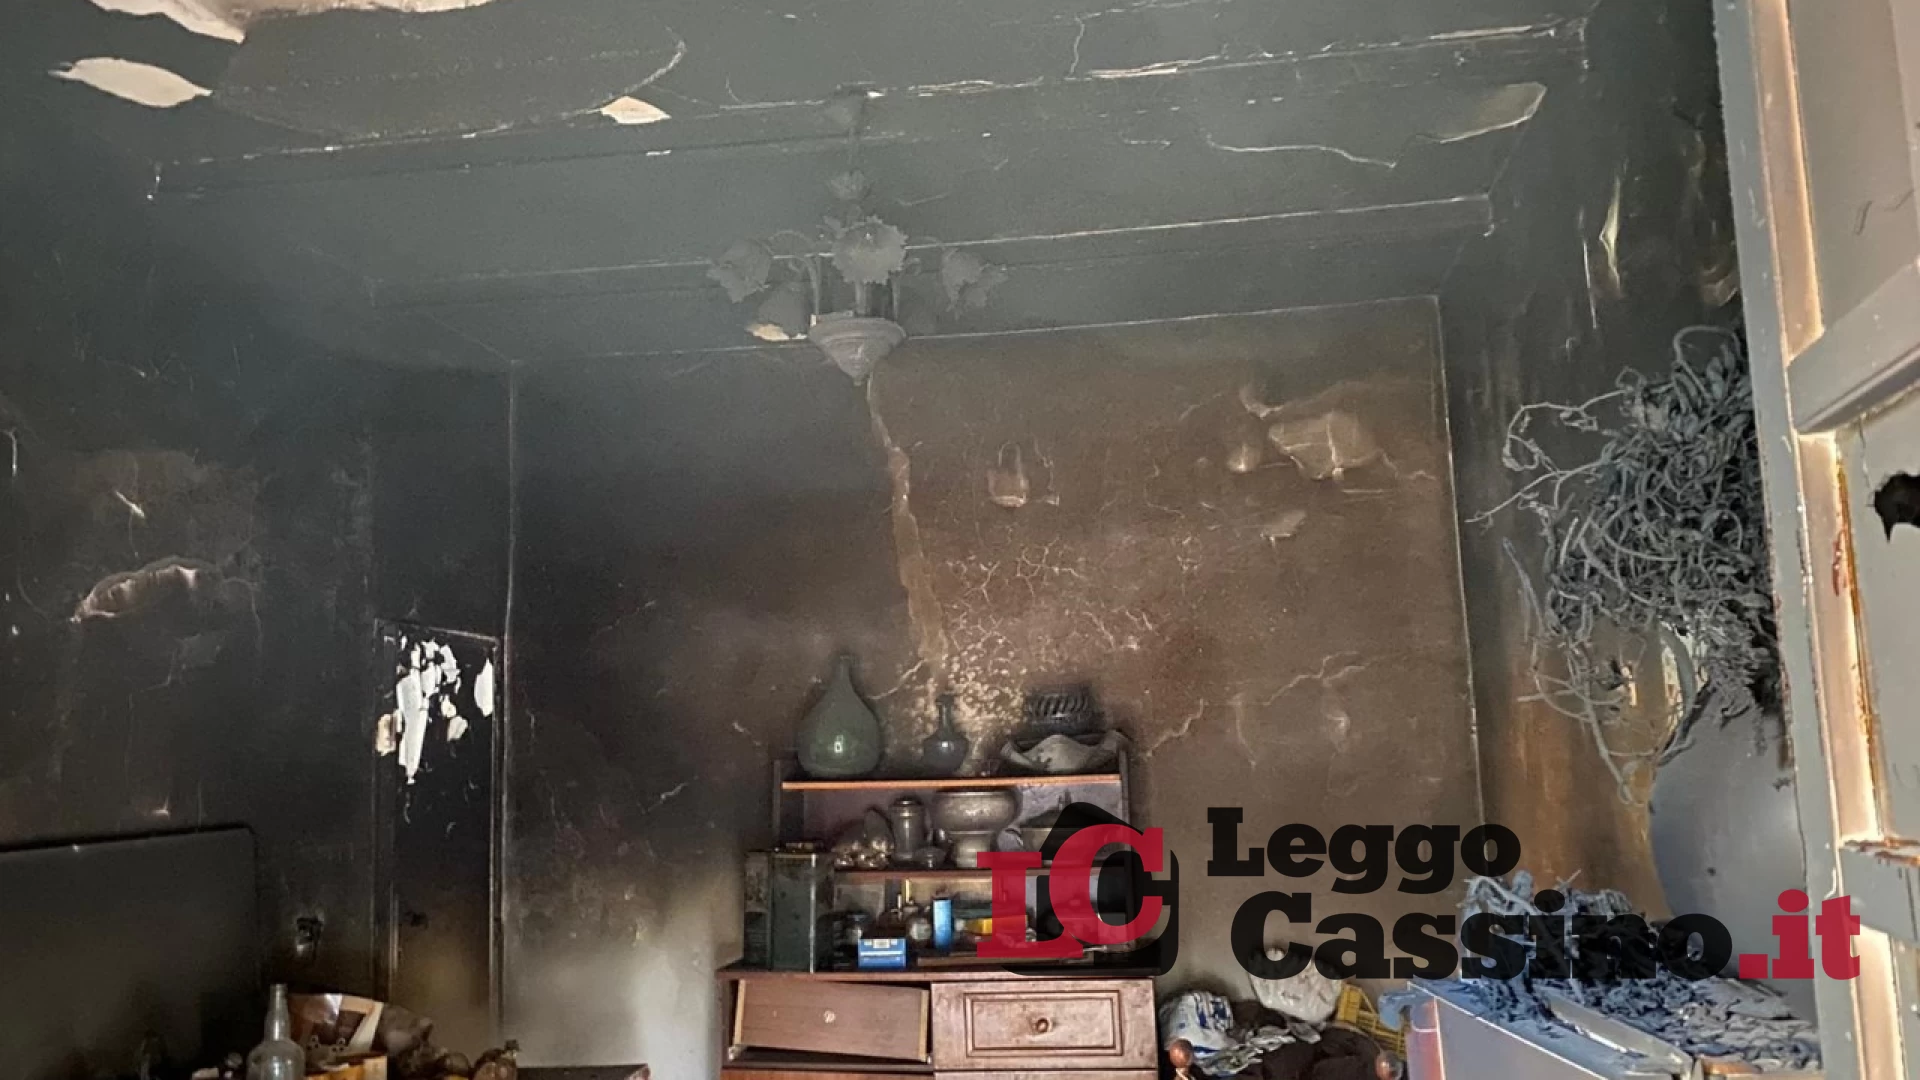 Una bombola di gas provoca un incendio, abitazione danneggiata